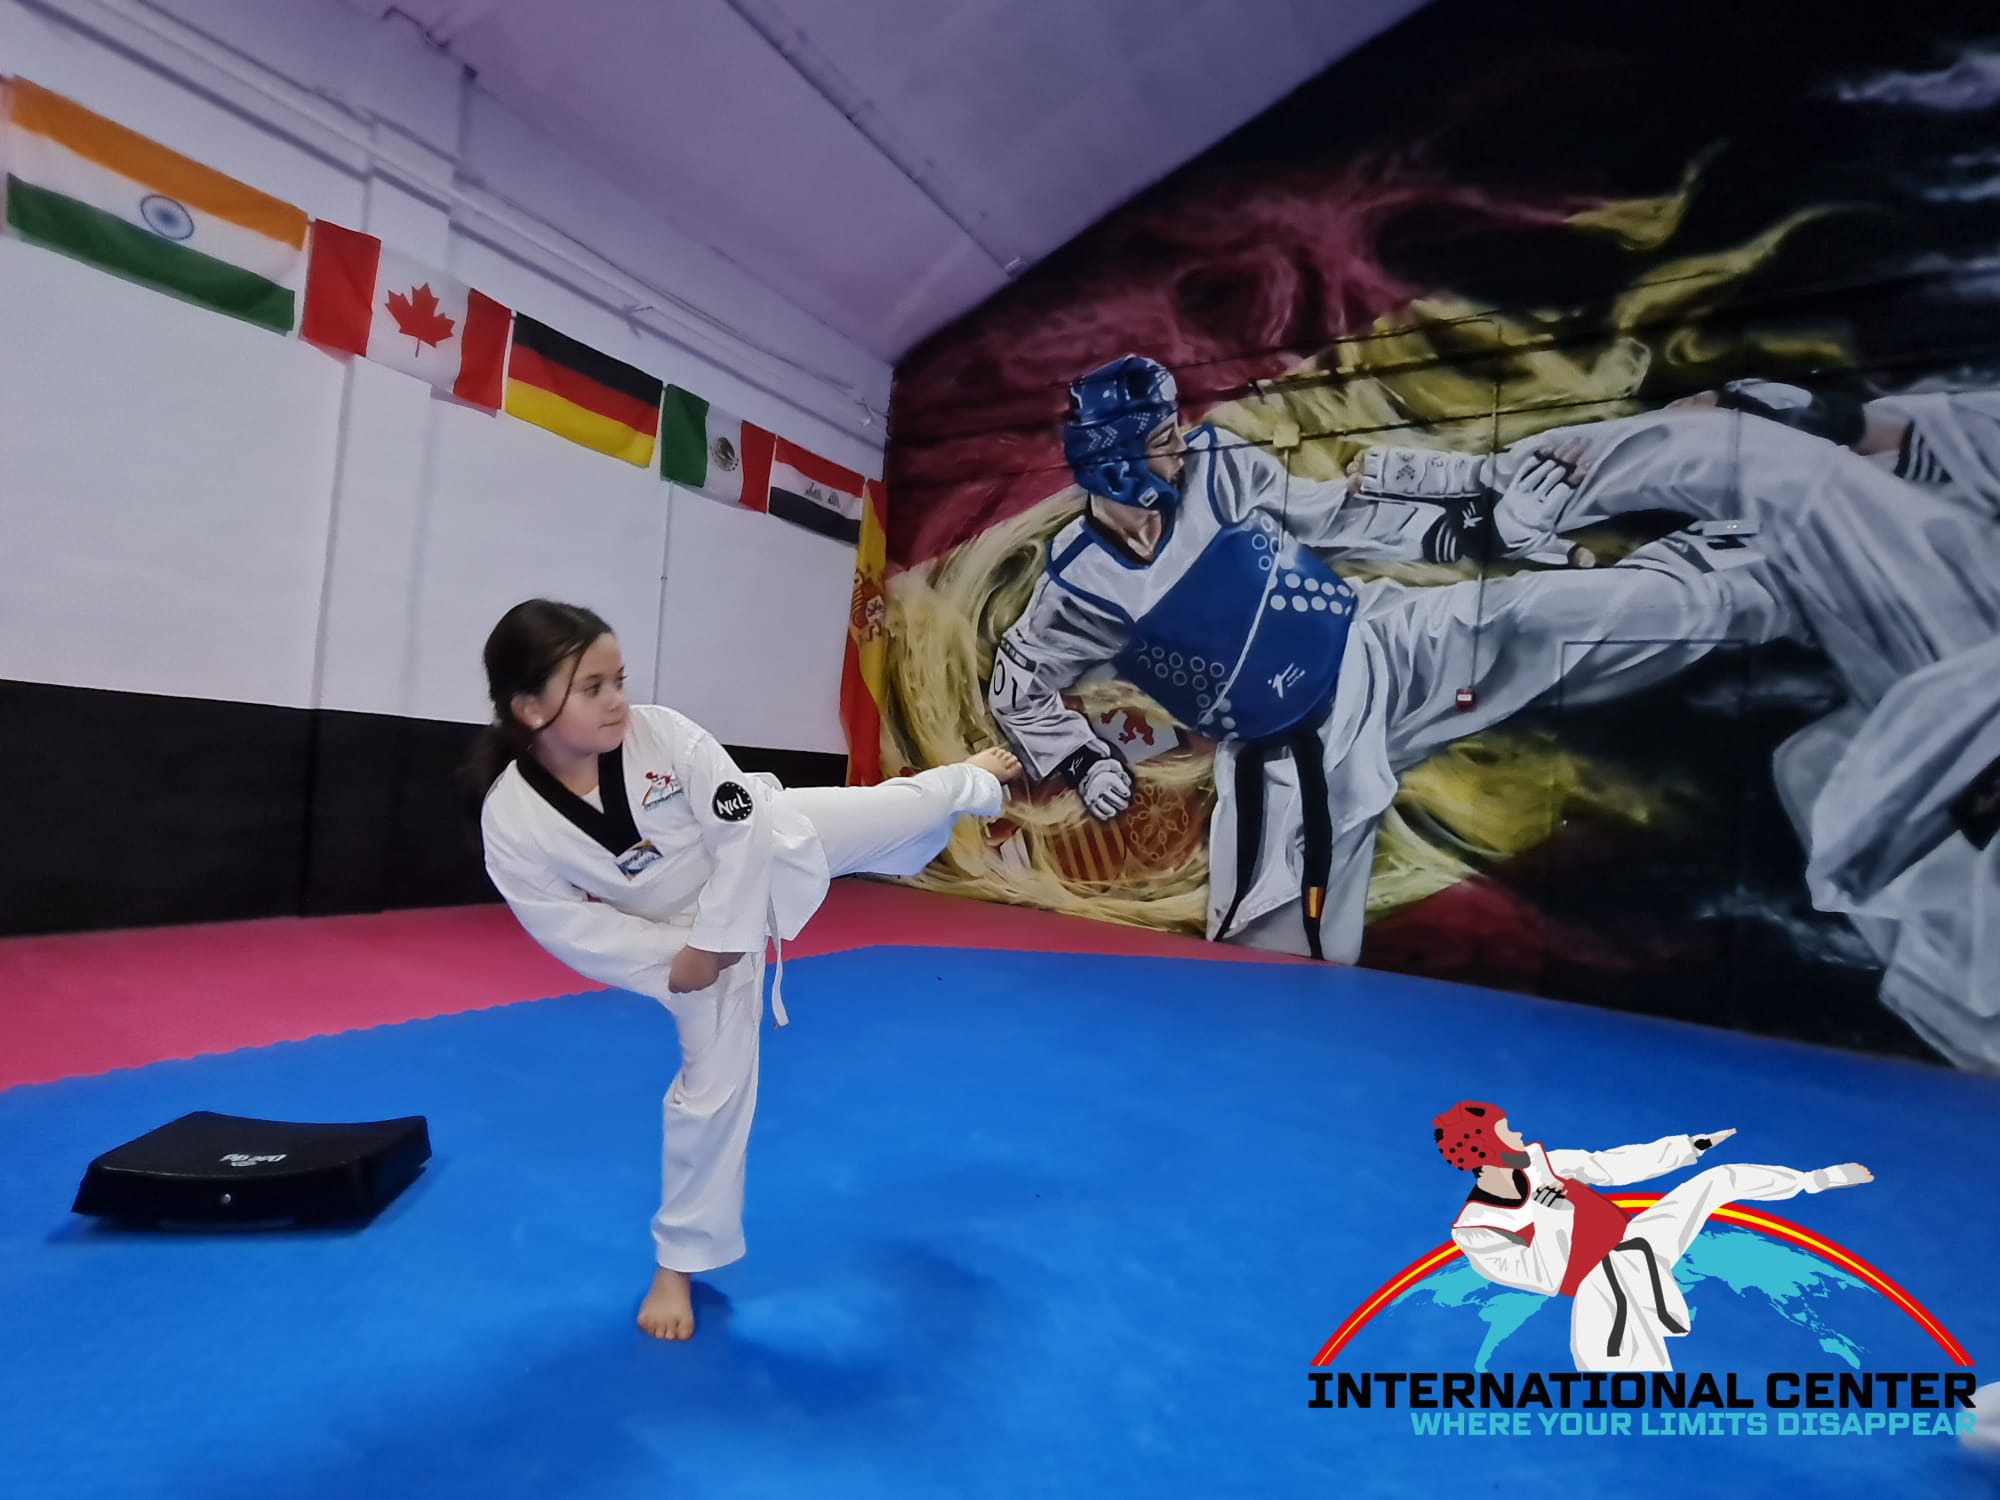 Images International Center Taekwondo